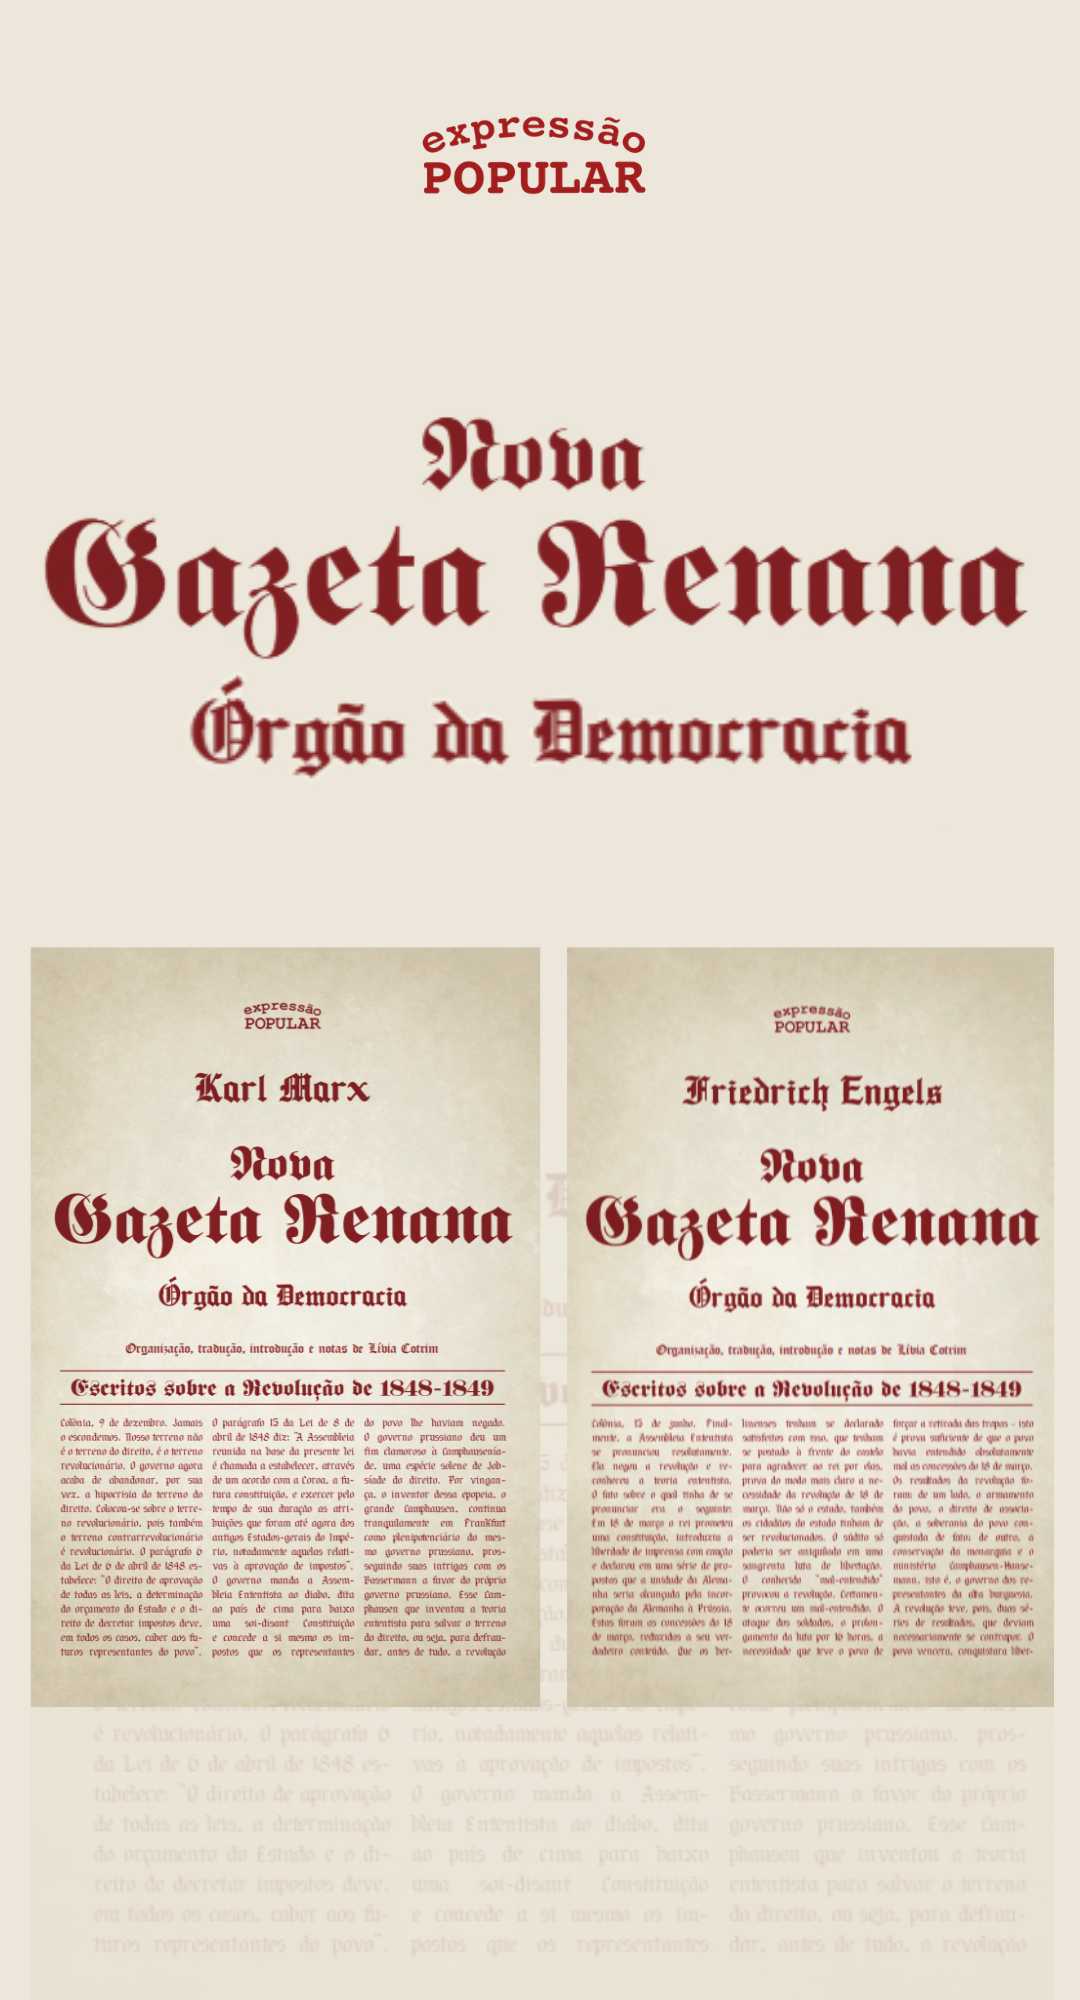 Expressão Popular lança Nova Gazeta Renana em 2 volumes